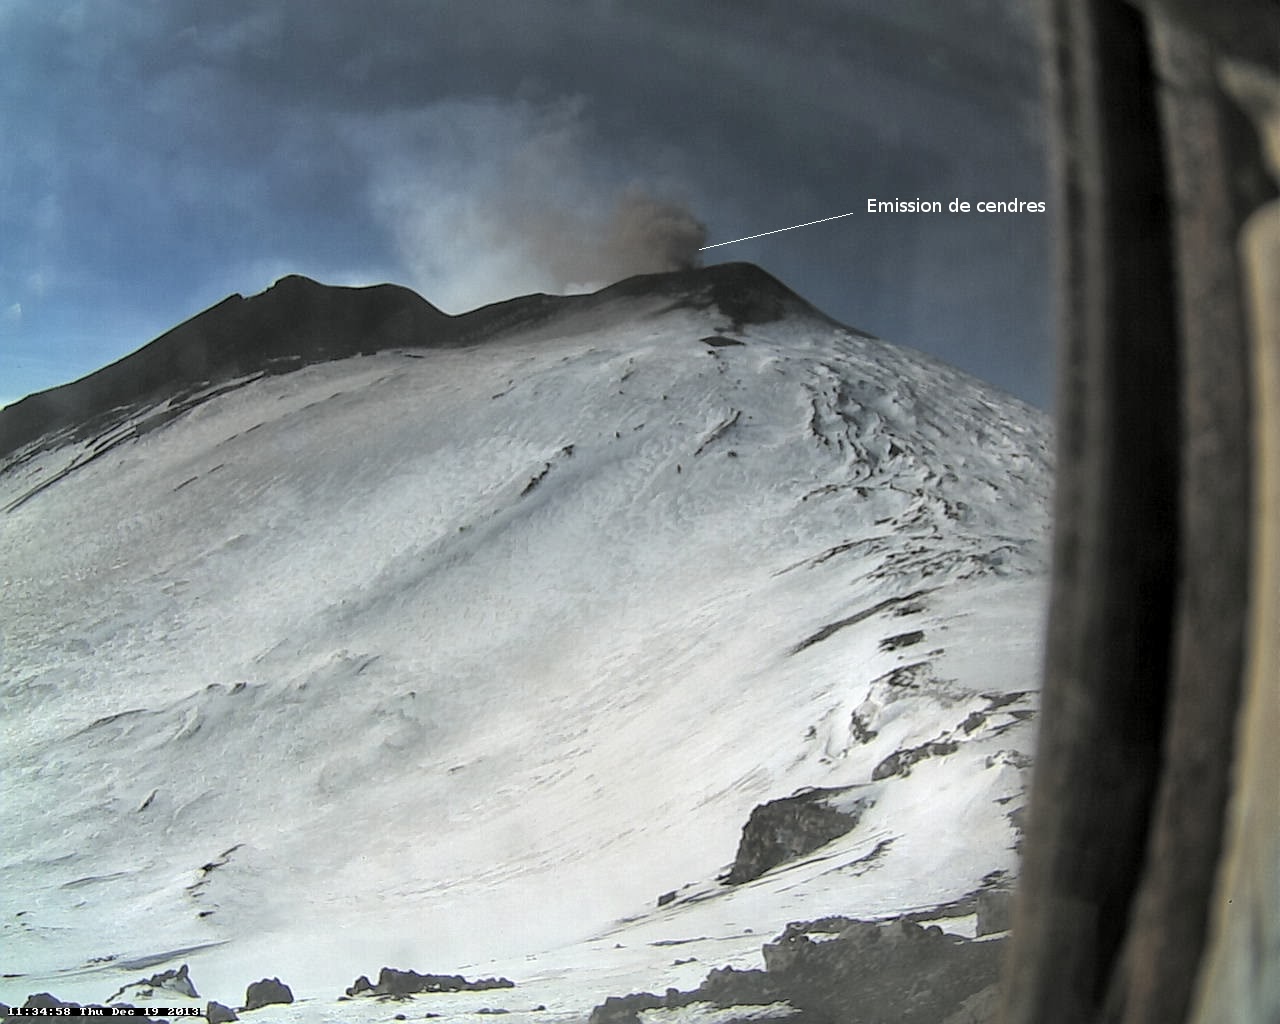 Emissions de cendres sur le volcan Etna,19 decembre 2013